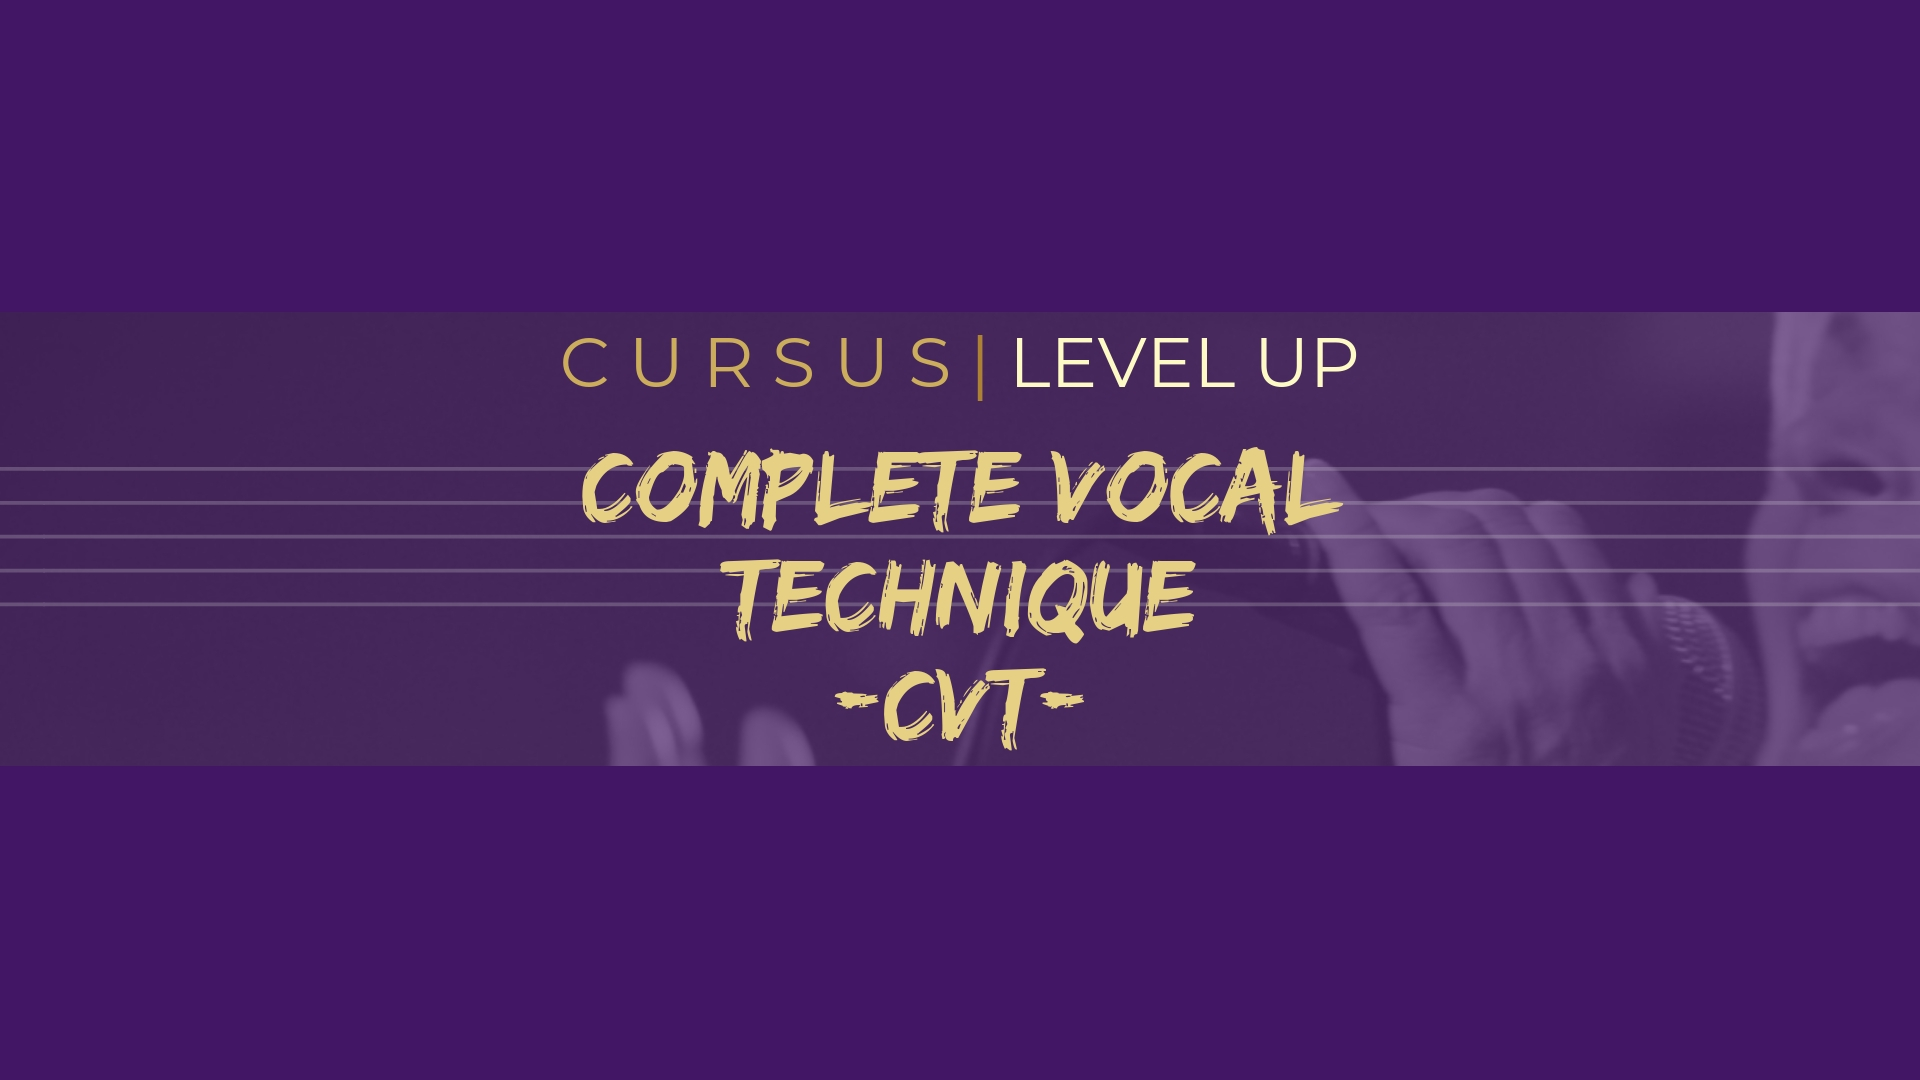 Cursus CVT level up (Complete Vocal Technique)